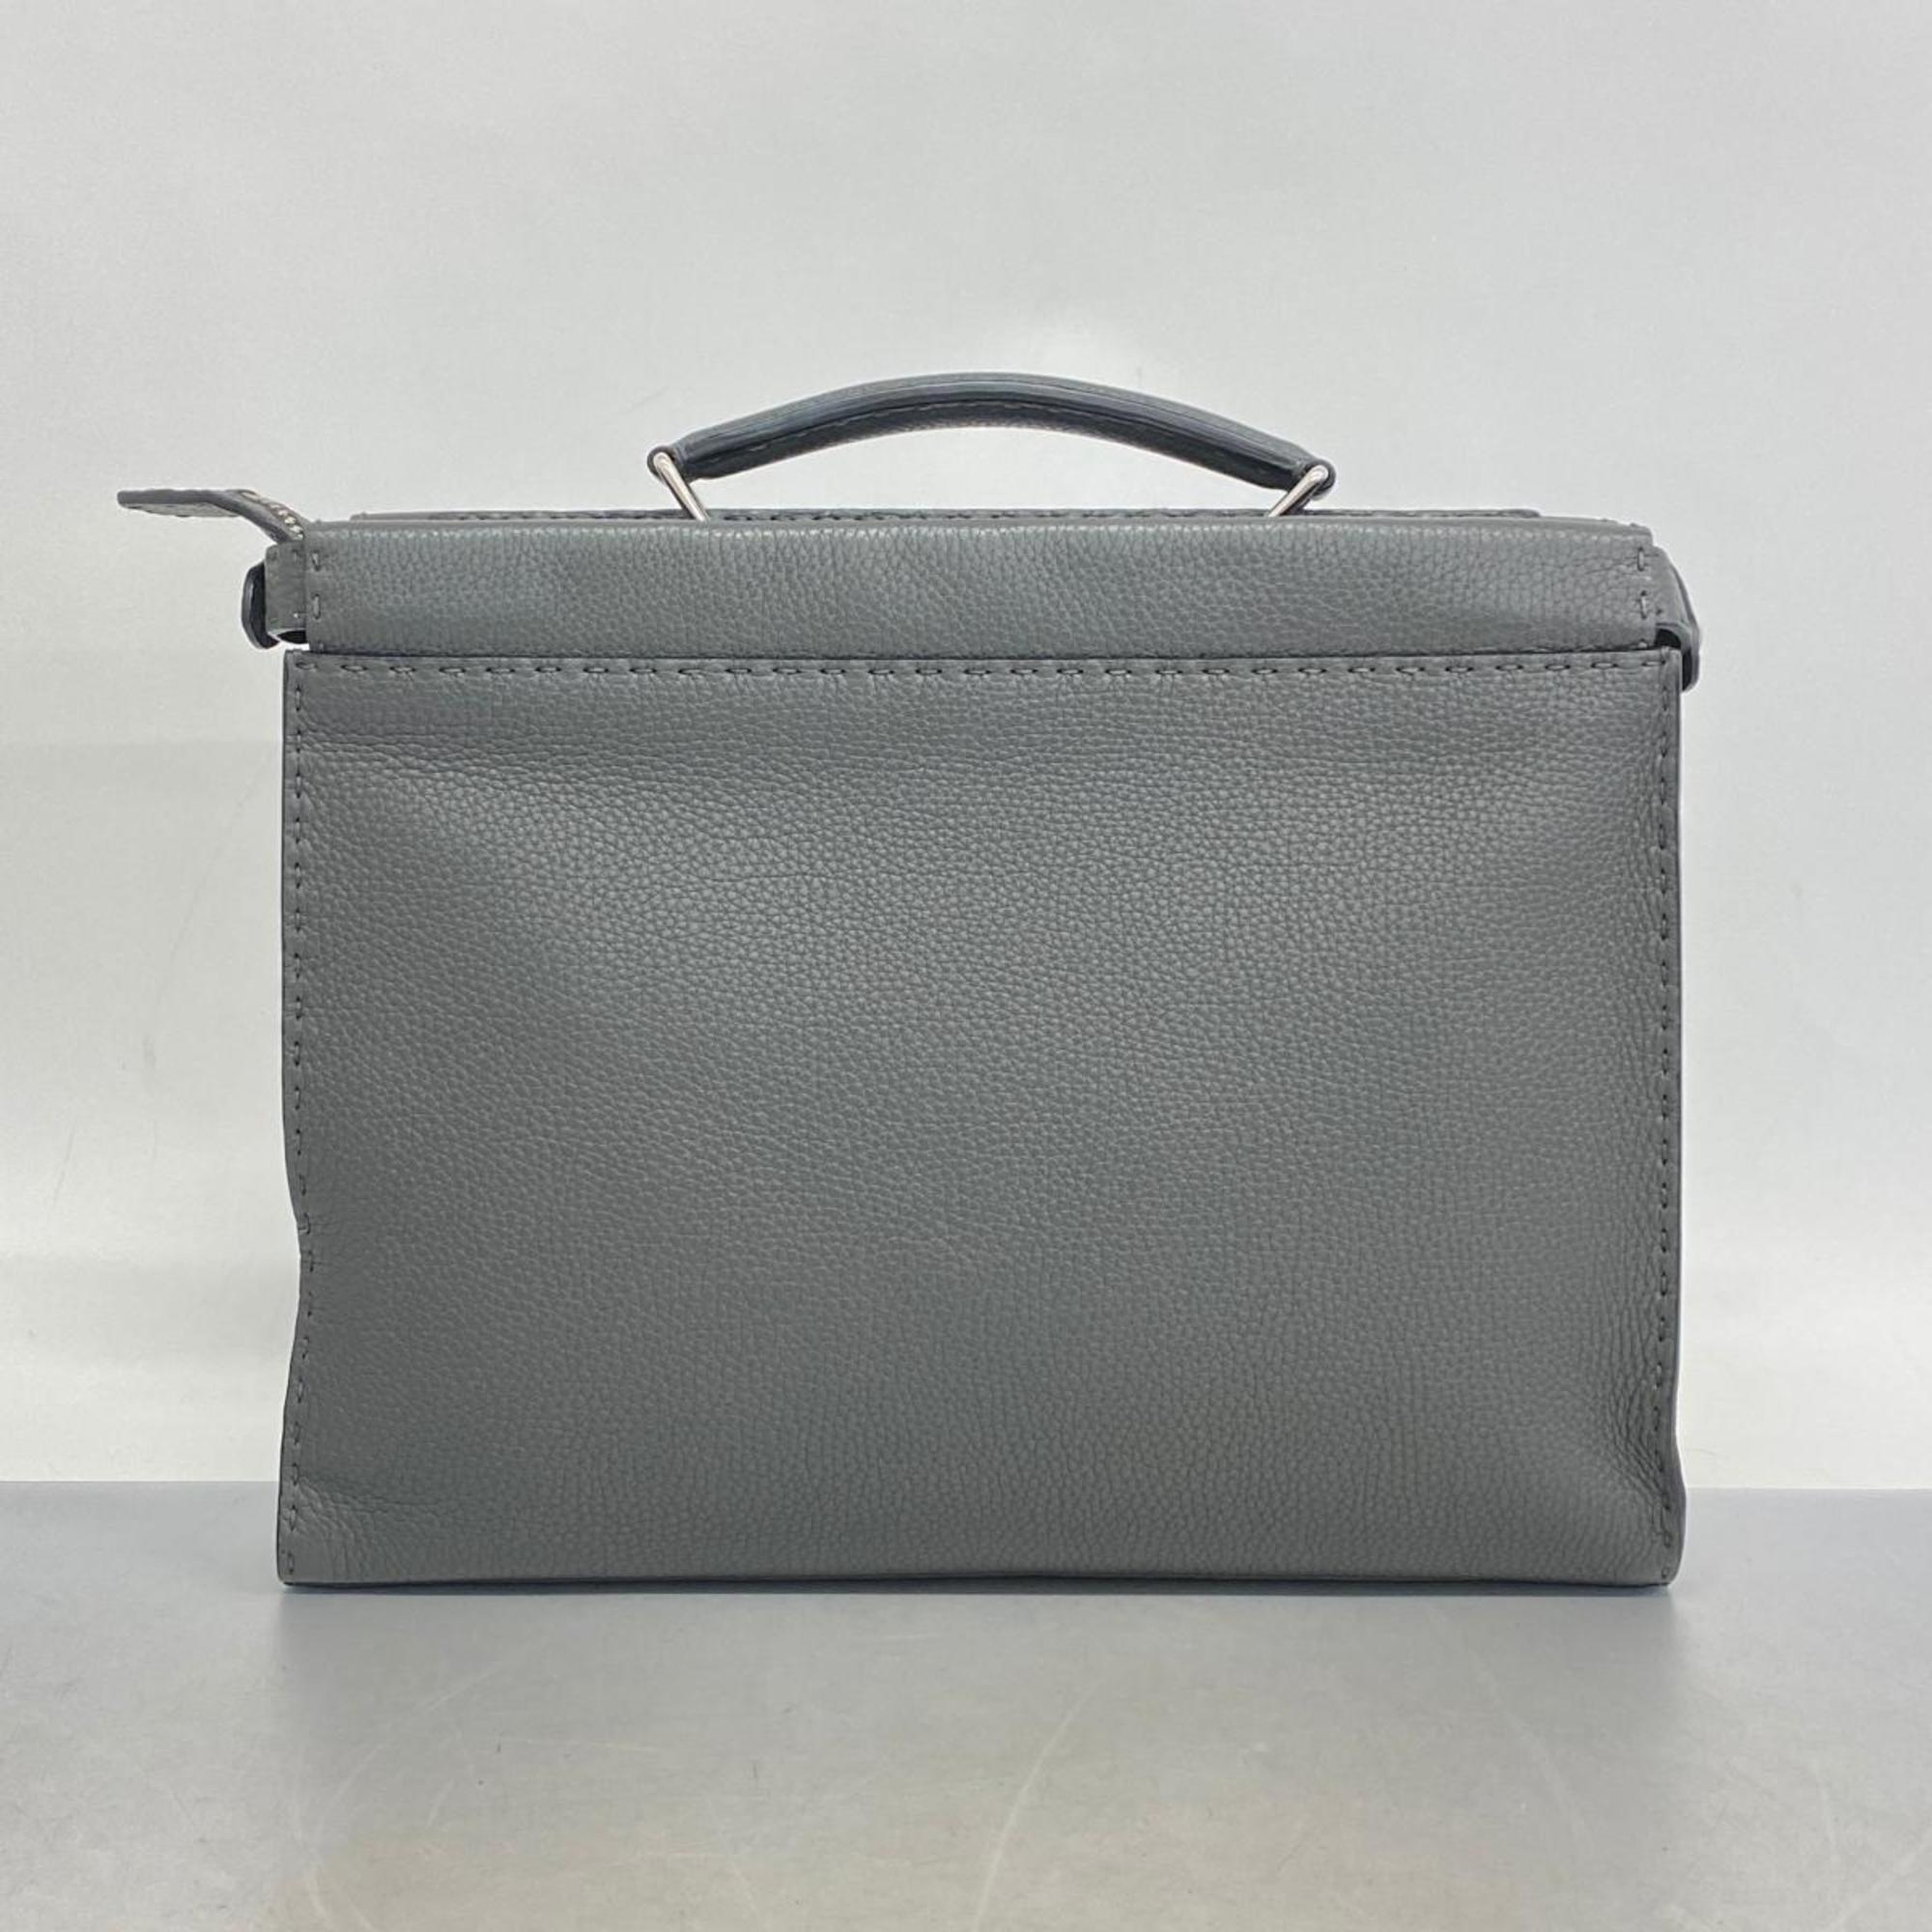 Fendi handbag Monster Selleria Peekaboo leather dark grey for men and women